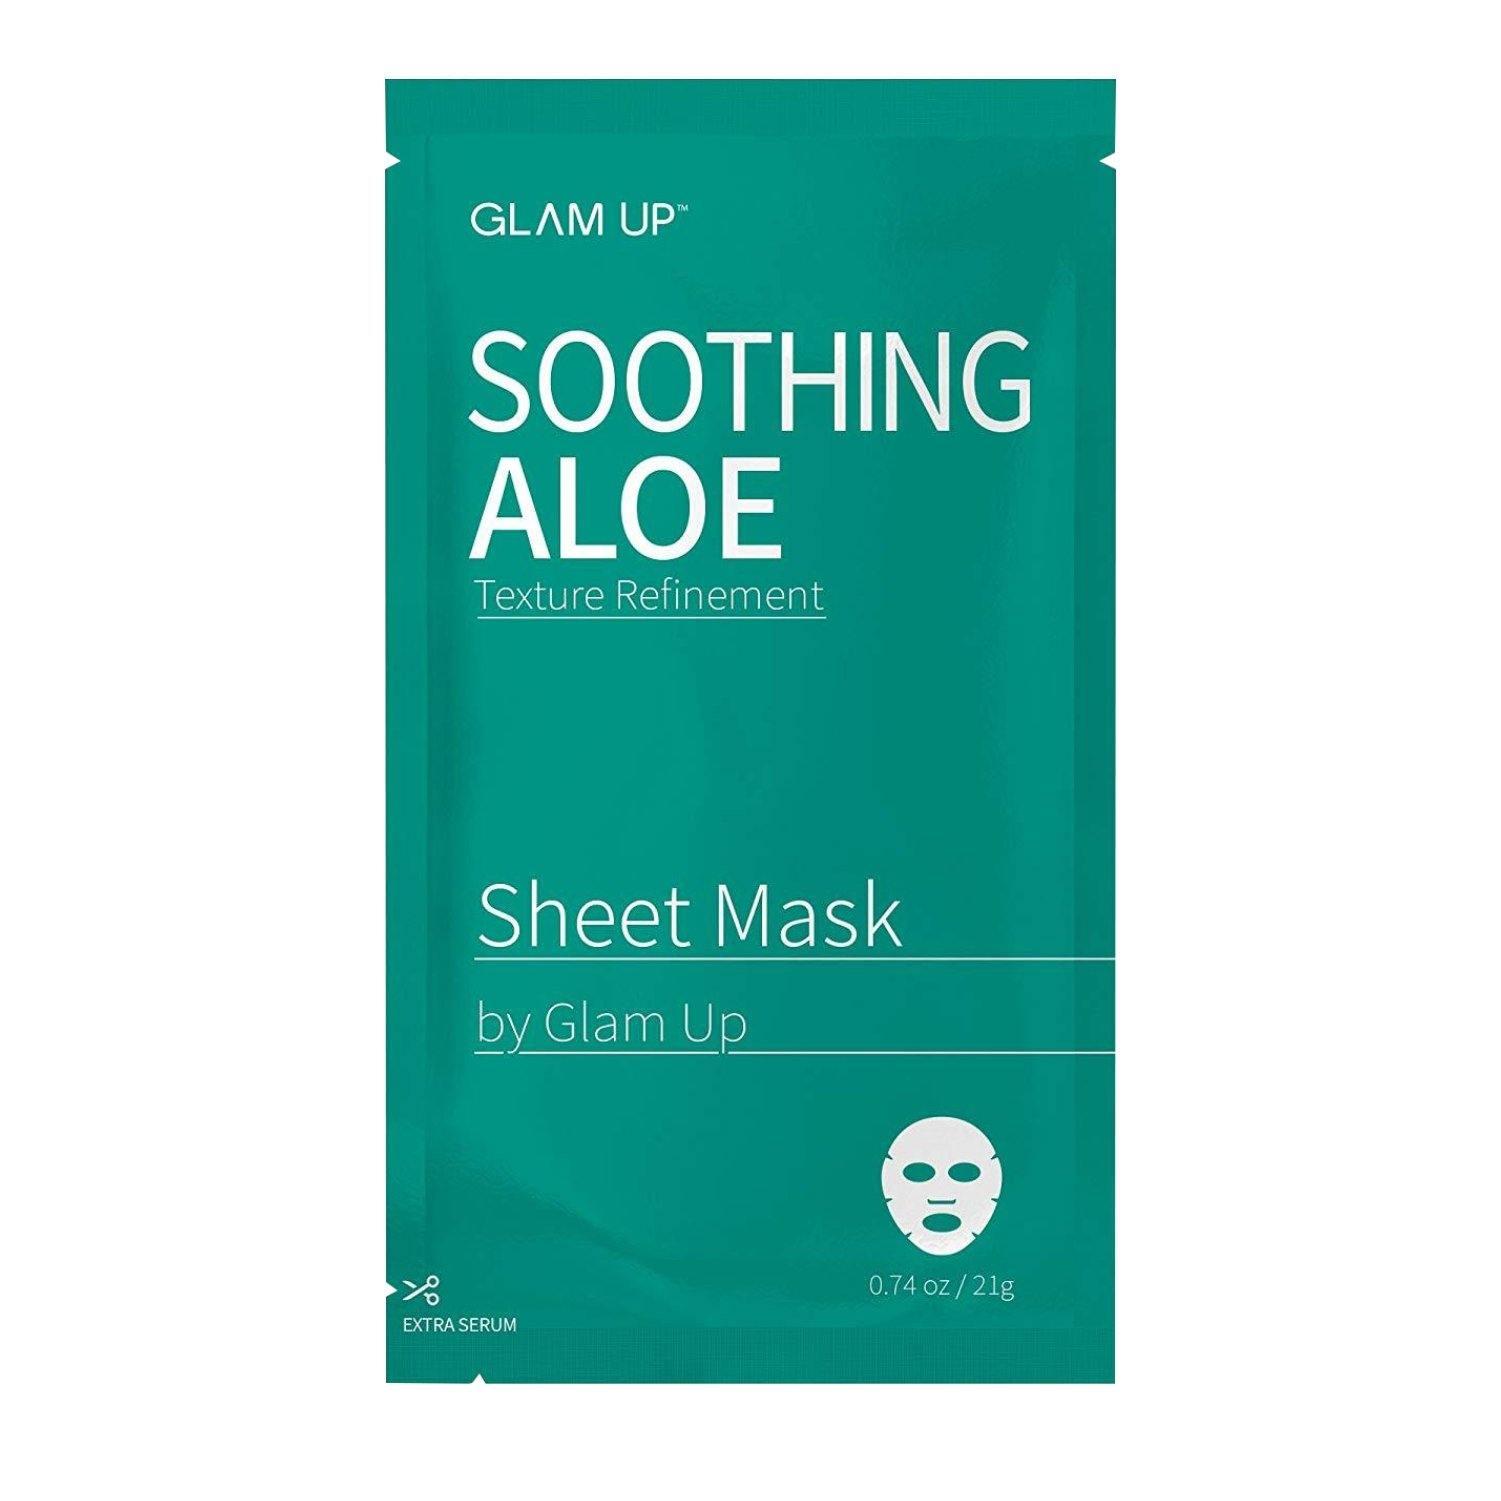 Soothing Aloe Sheet Mask